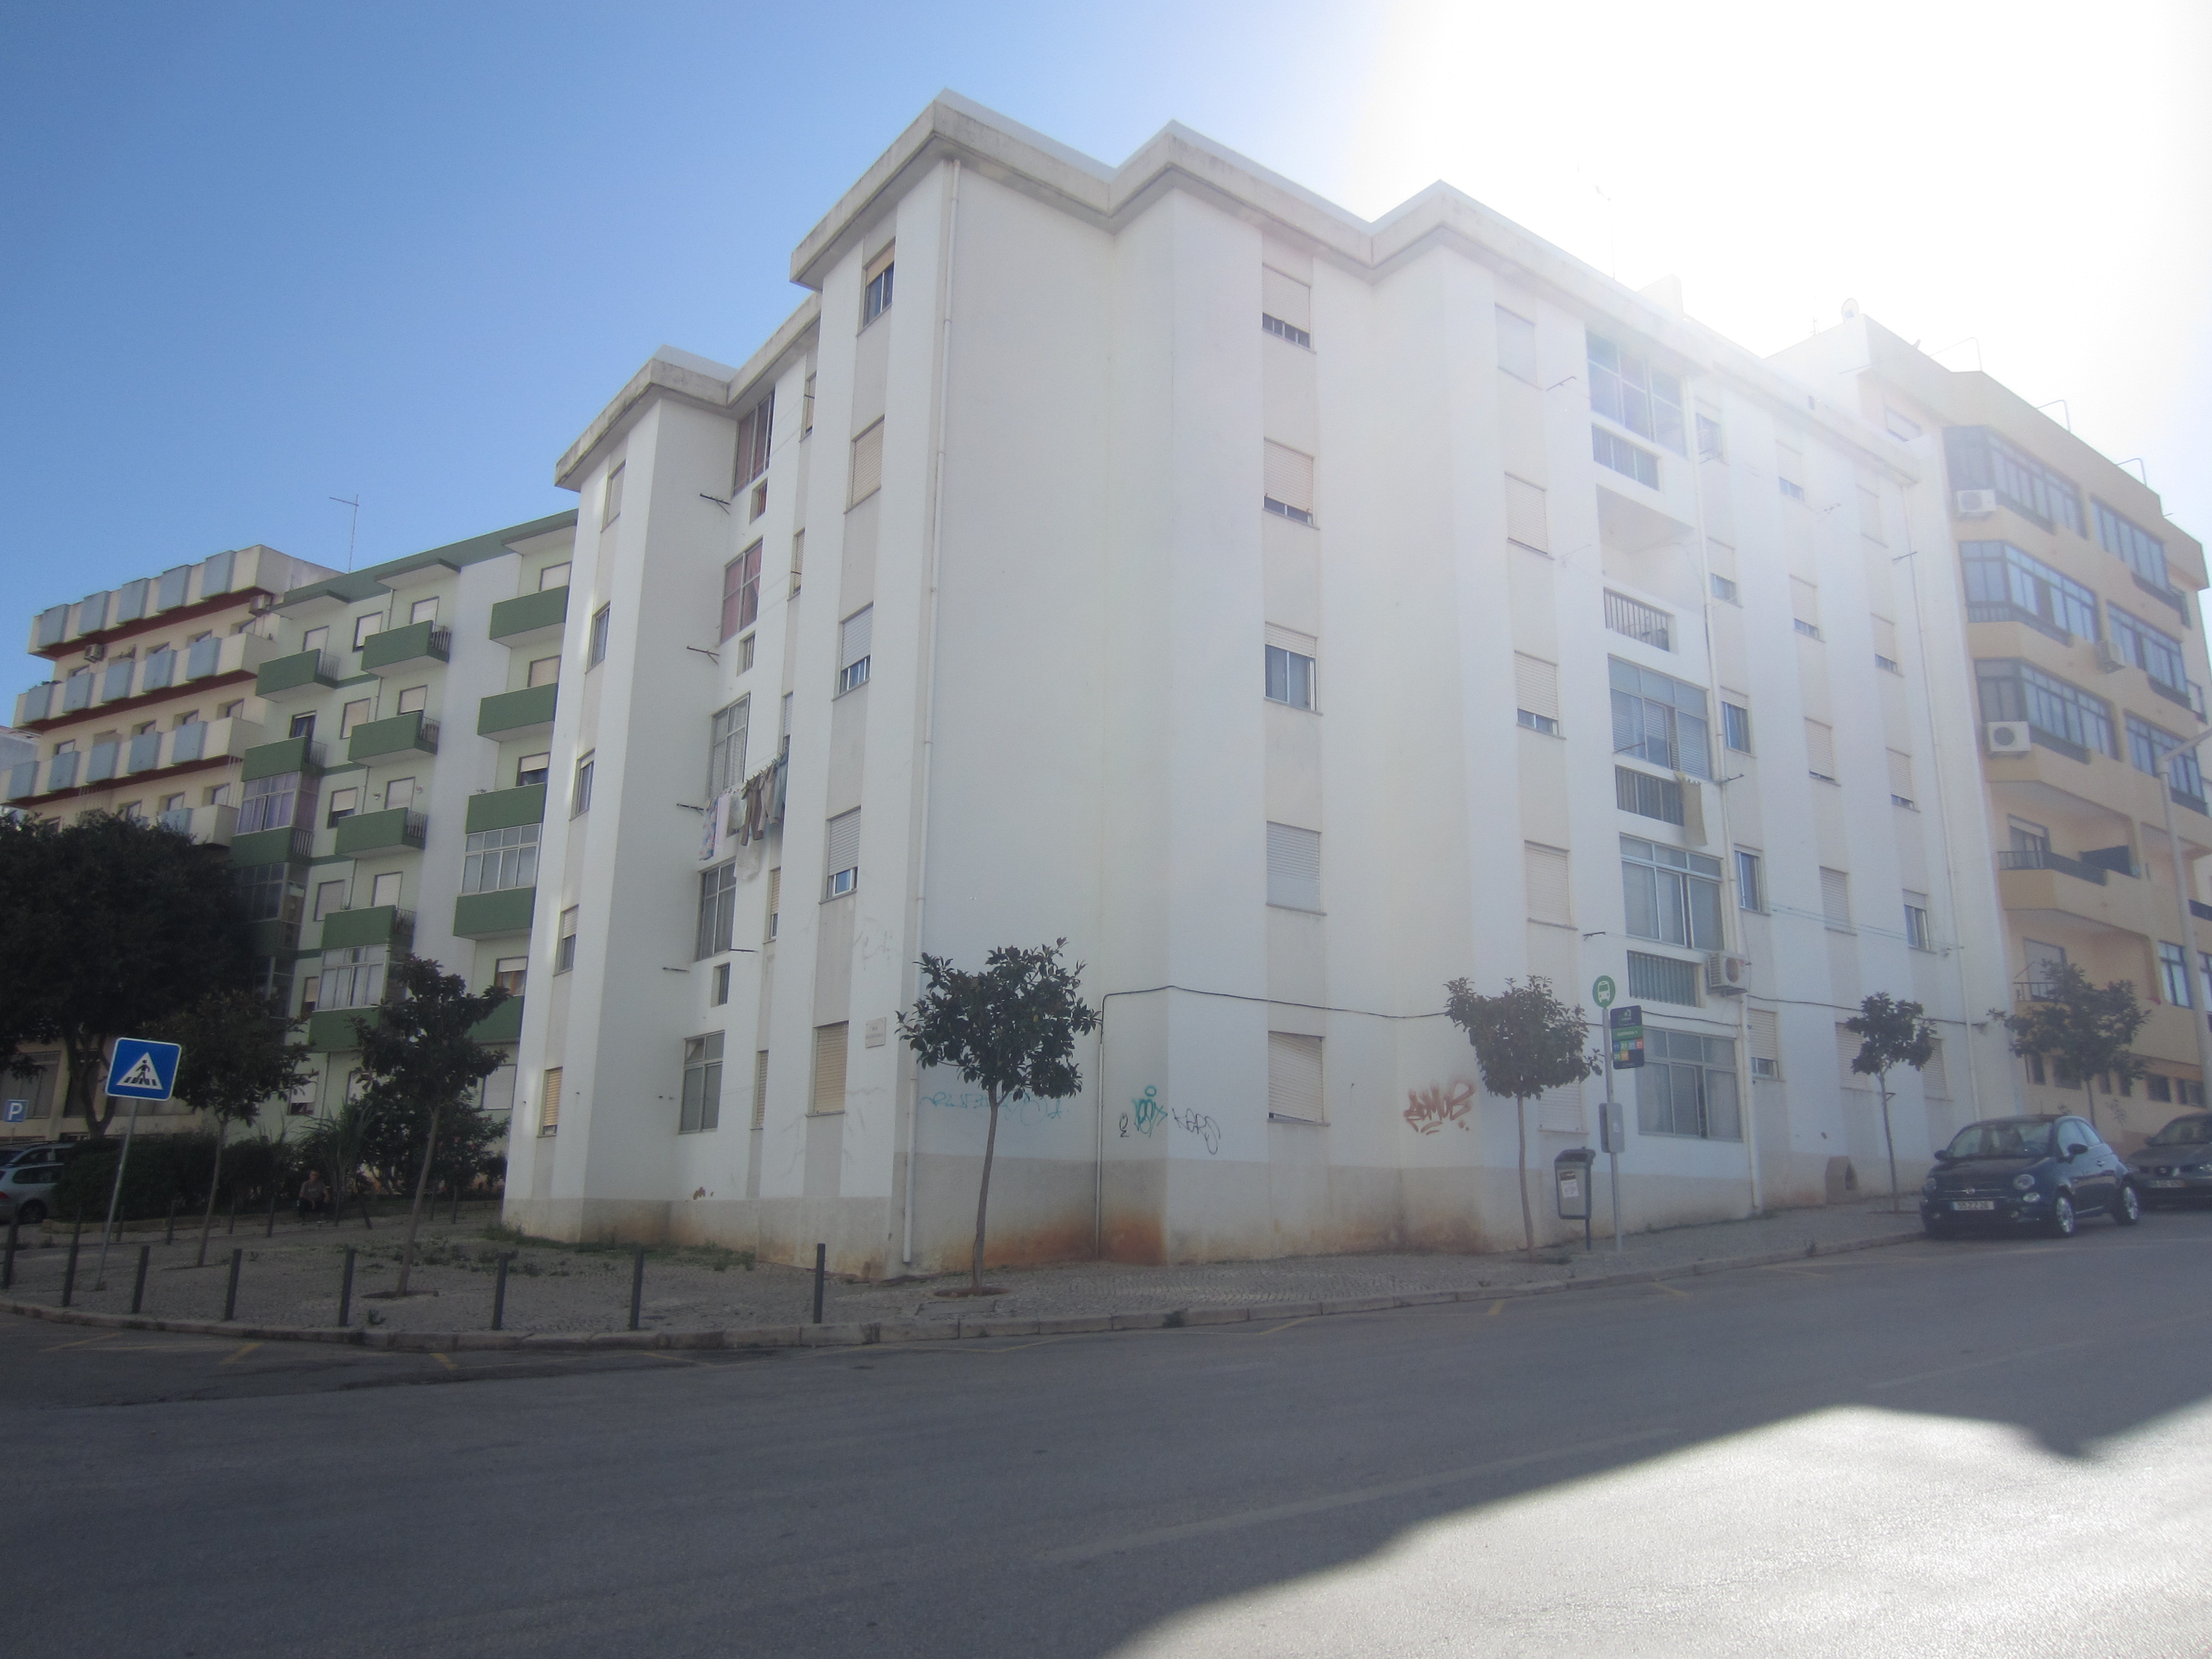 Celebrado contrato para a elaboração do projeto de reabilitação de 30 edifícios habitacionais nas freguesias de Portimão e Alvor - Portimão